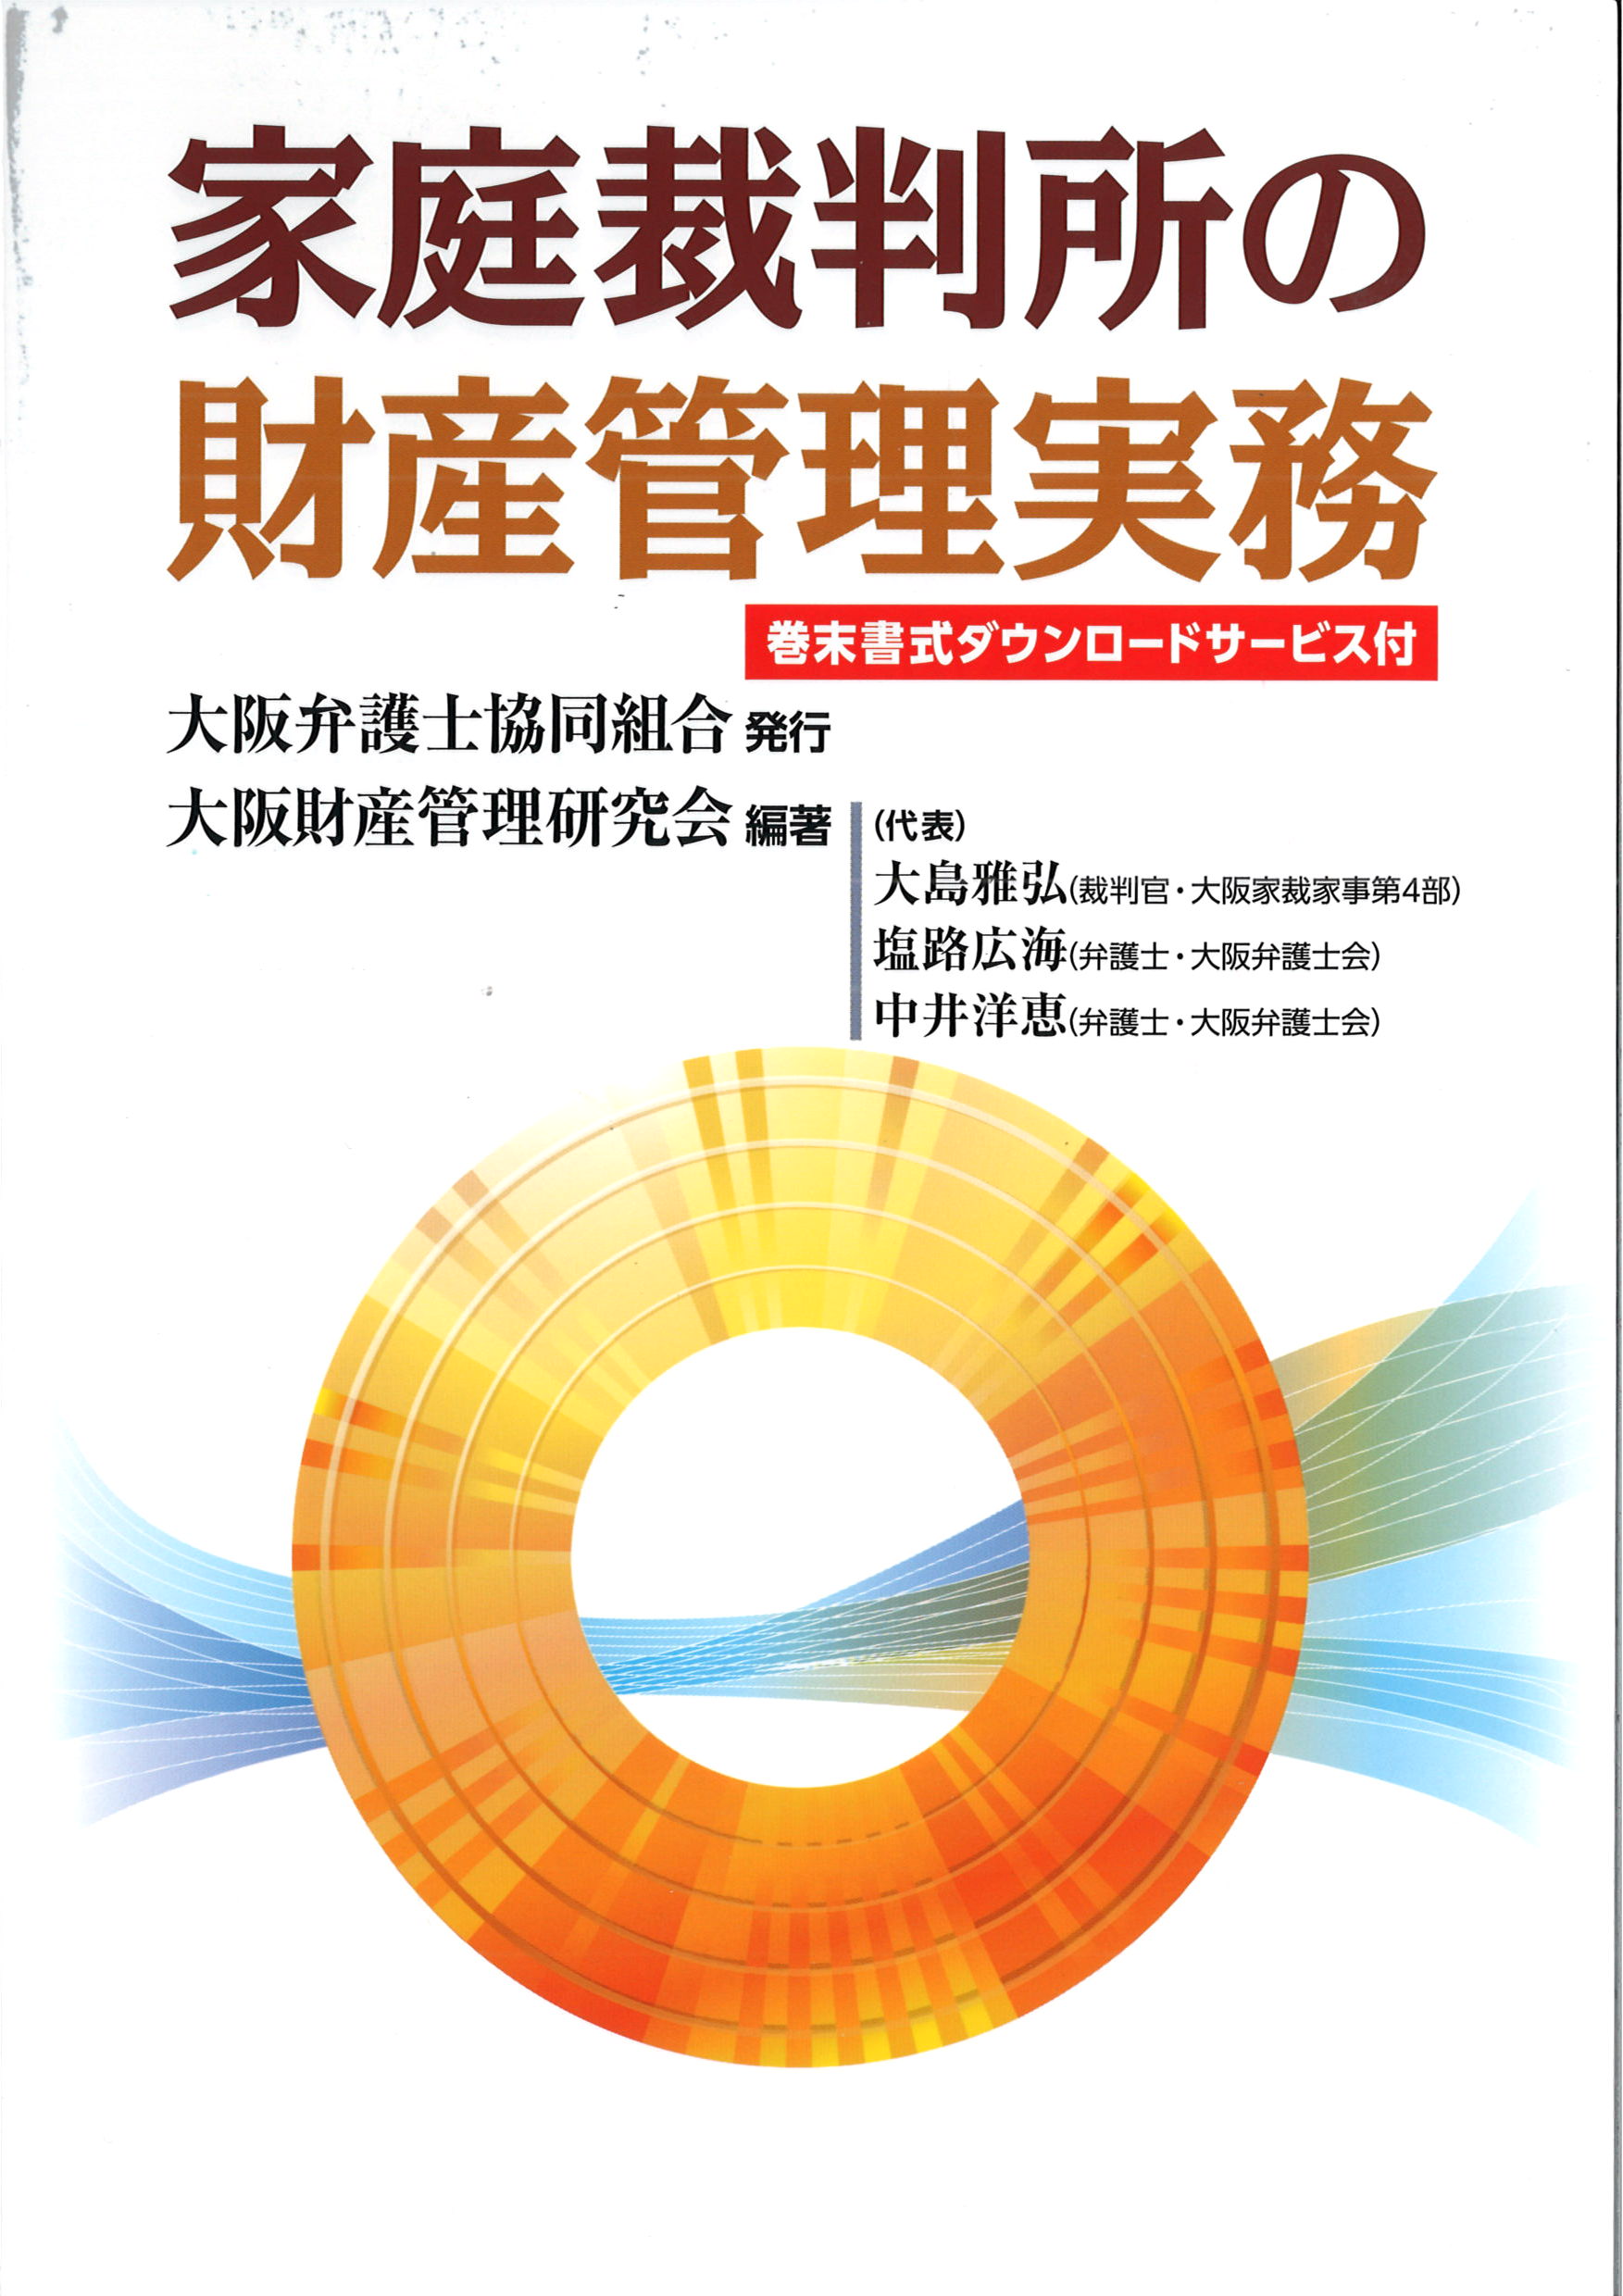 上田純弁護士が編集・執筆に参加した家庭裁判所の財産管理に関する書籍が出版されました。